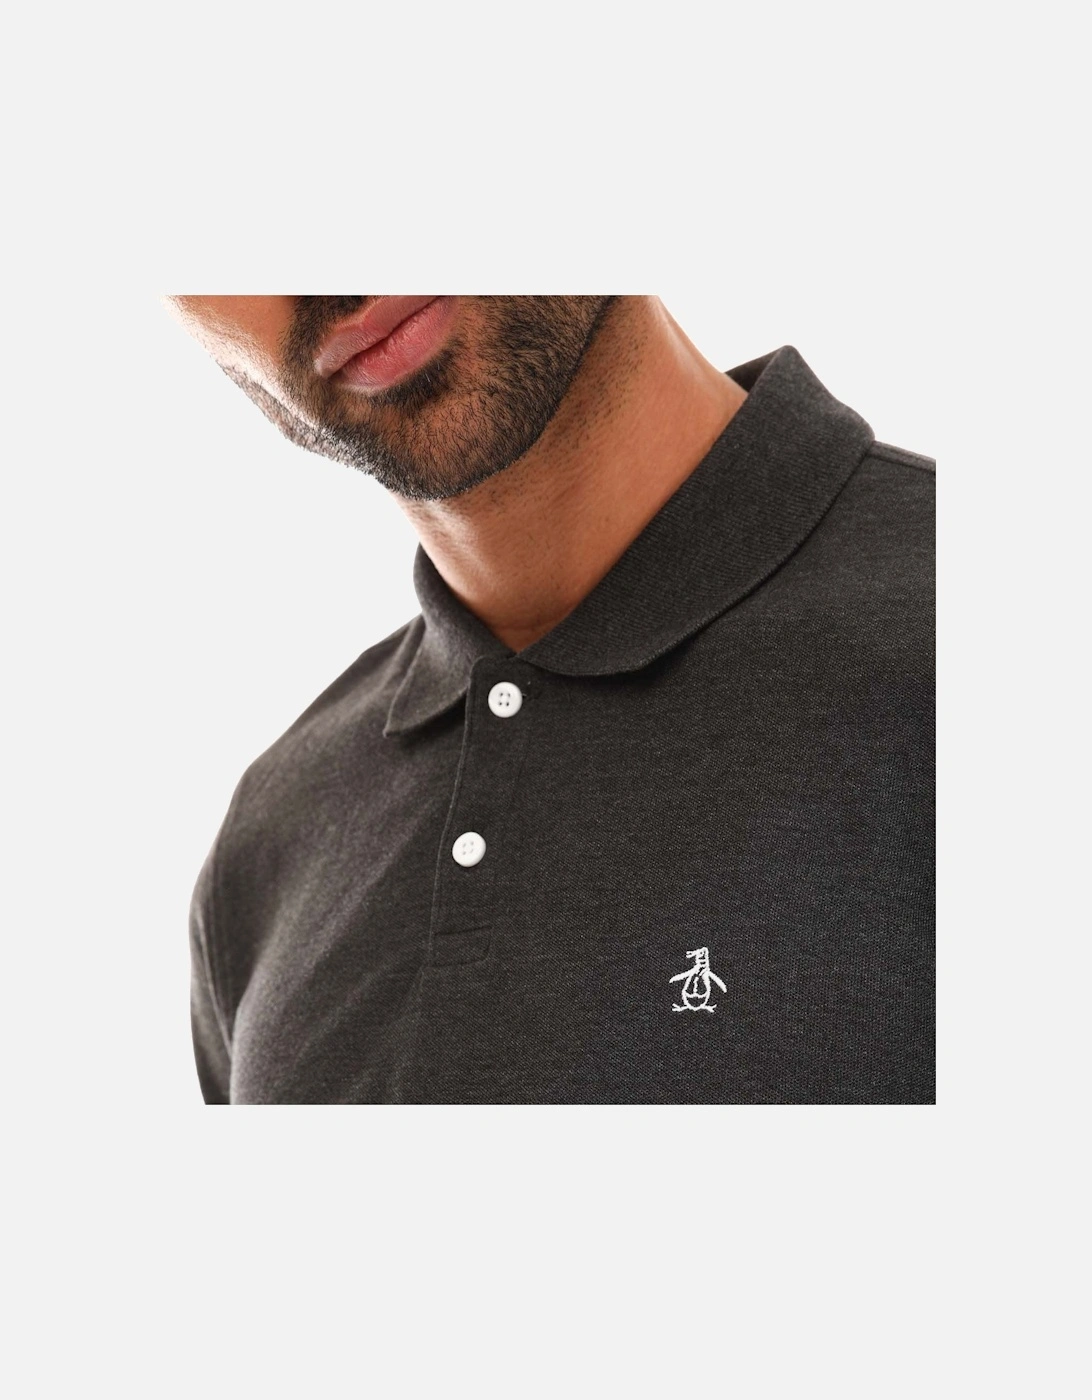 Mens Logo Long Sleeve Polo Shirt